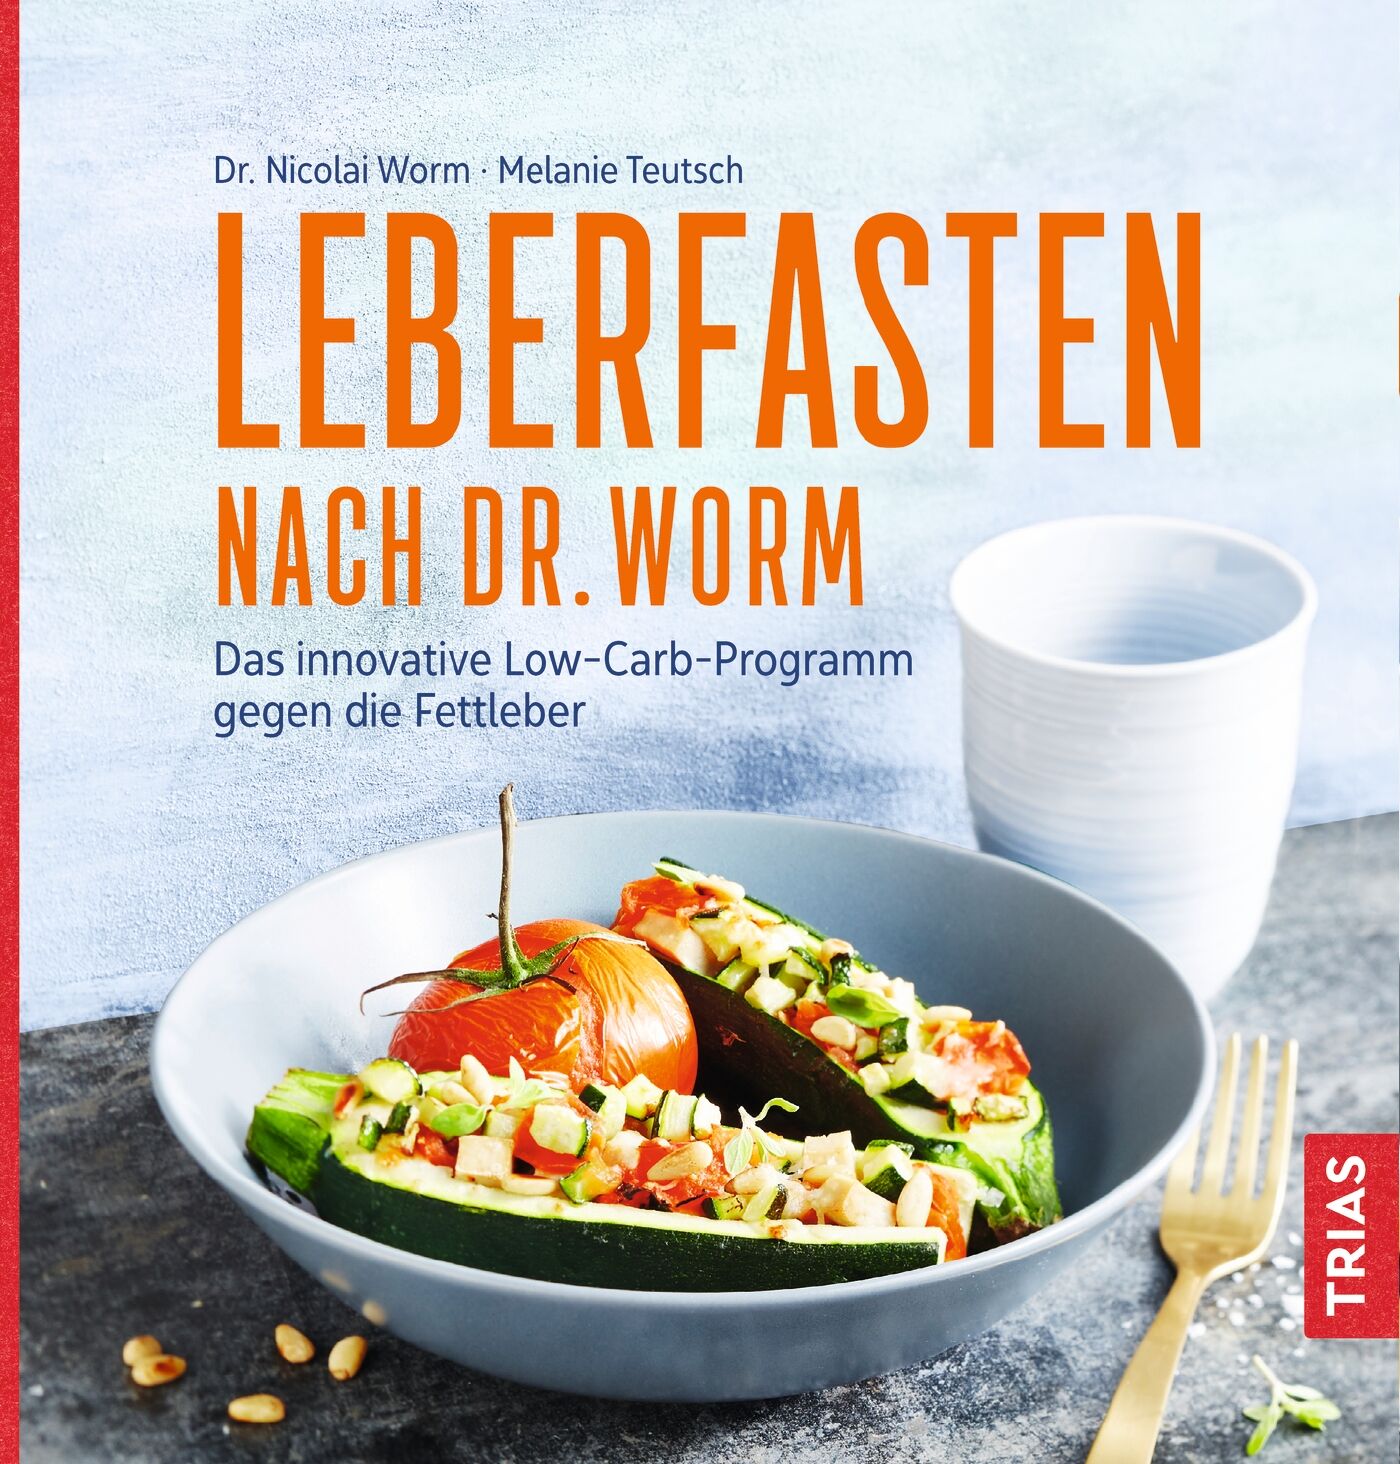 Leberfasten nach Dr. Worm, 9783432107837